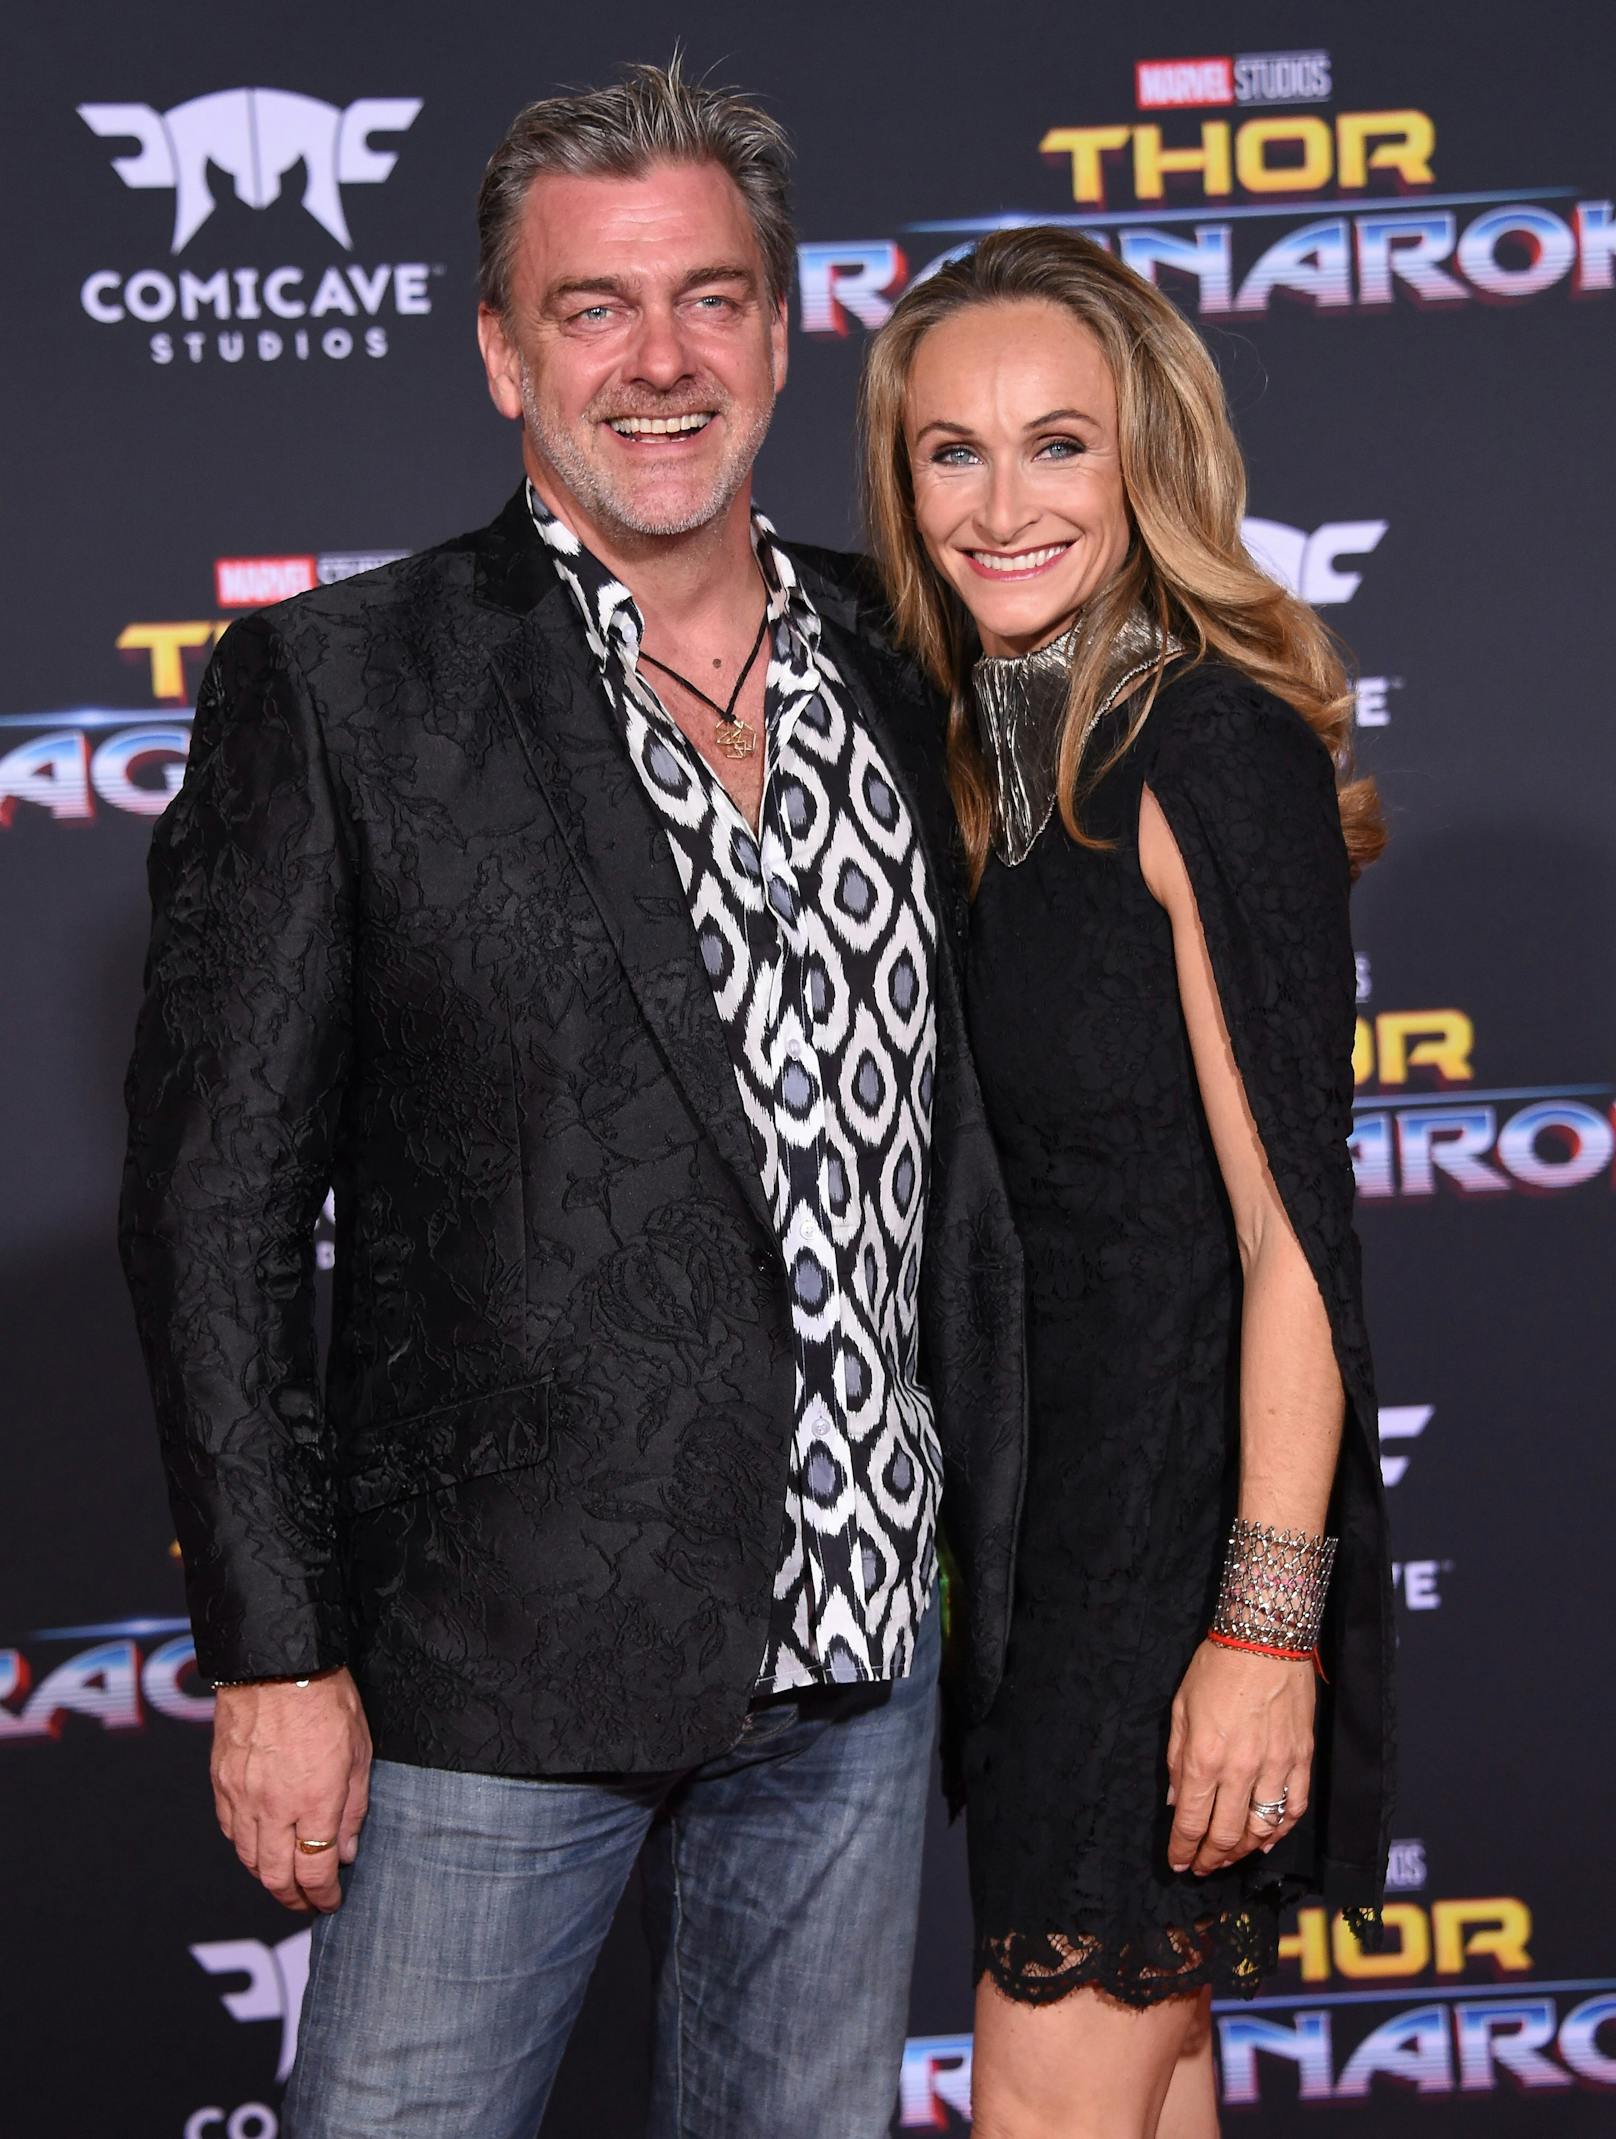 Ray Stevenson und seine Freundin Elisabetta bei der Premiere von "Thor: Ragnarok" in Los Angeles 2017